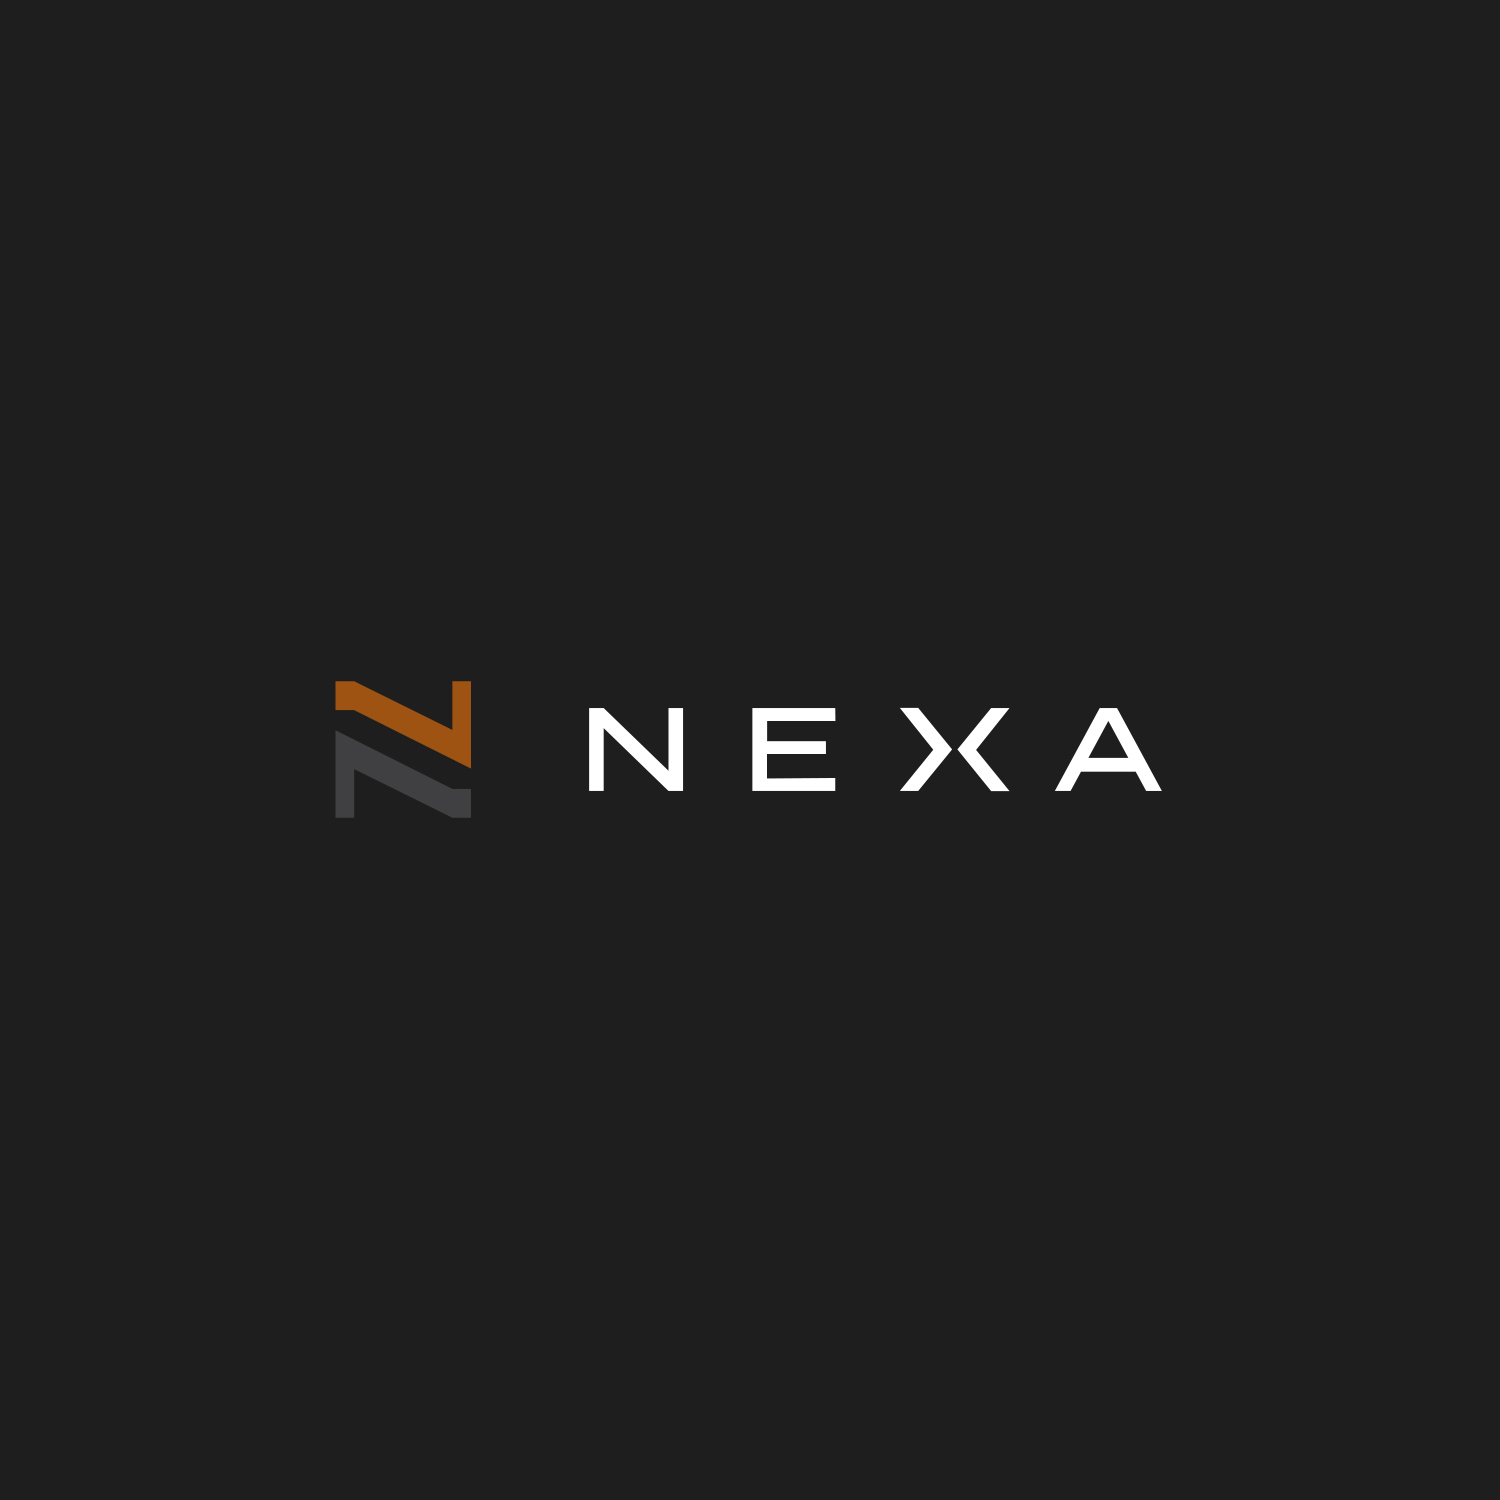 NEXA Concrete Inc.'s logo